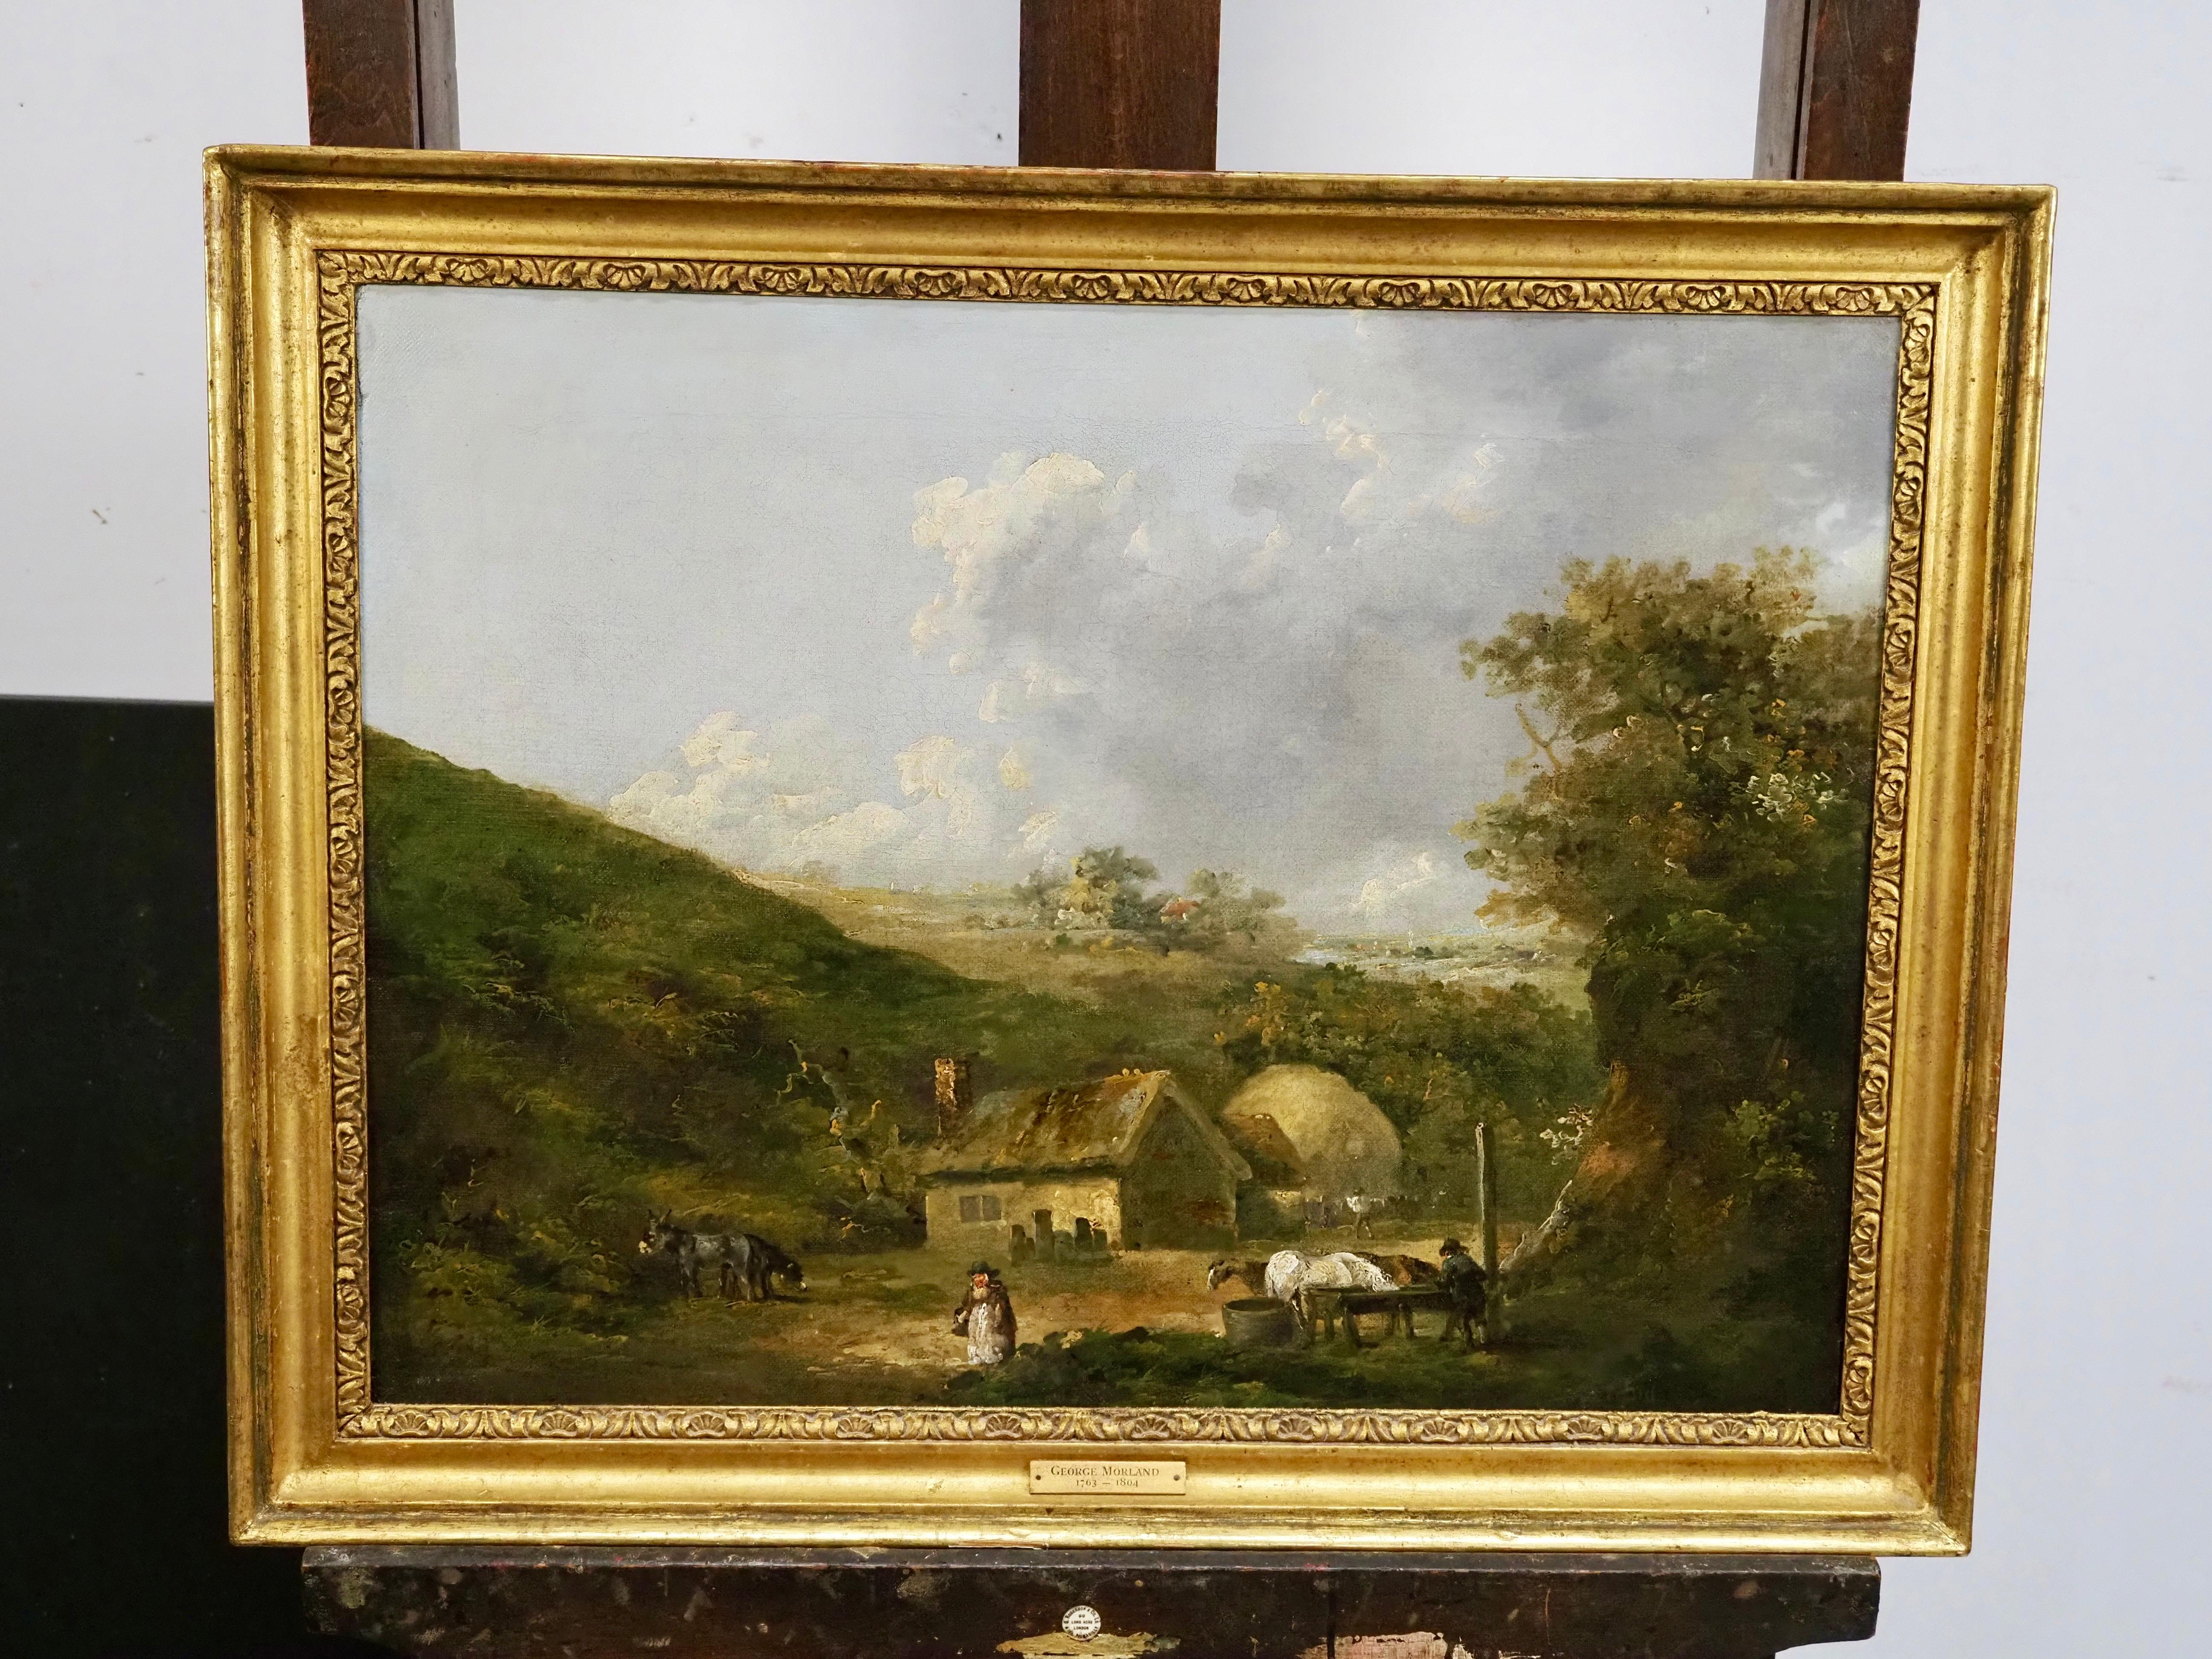 Une ferme dans un paysage - École anglaise Painting par George Morland